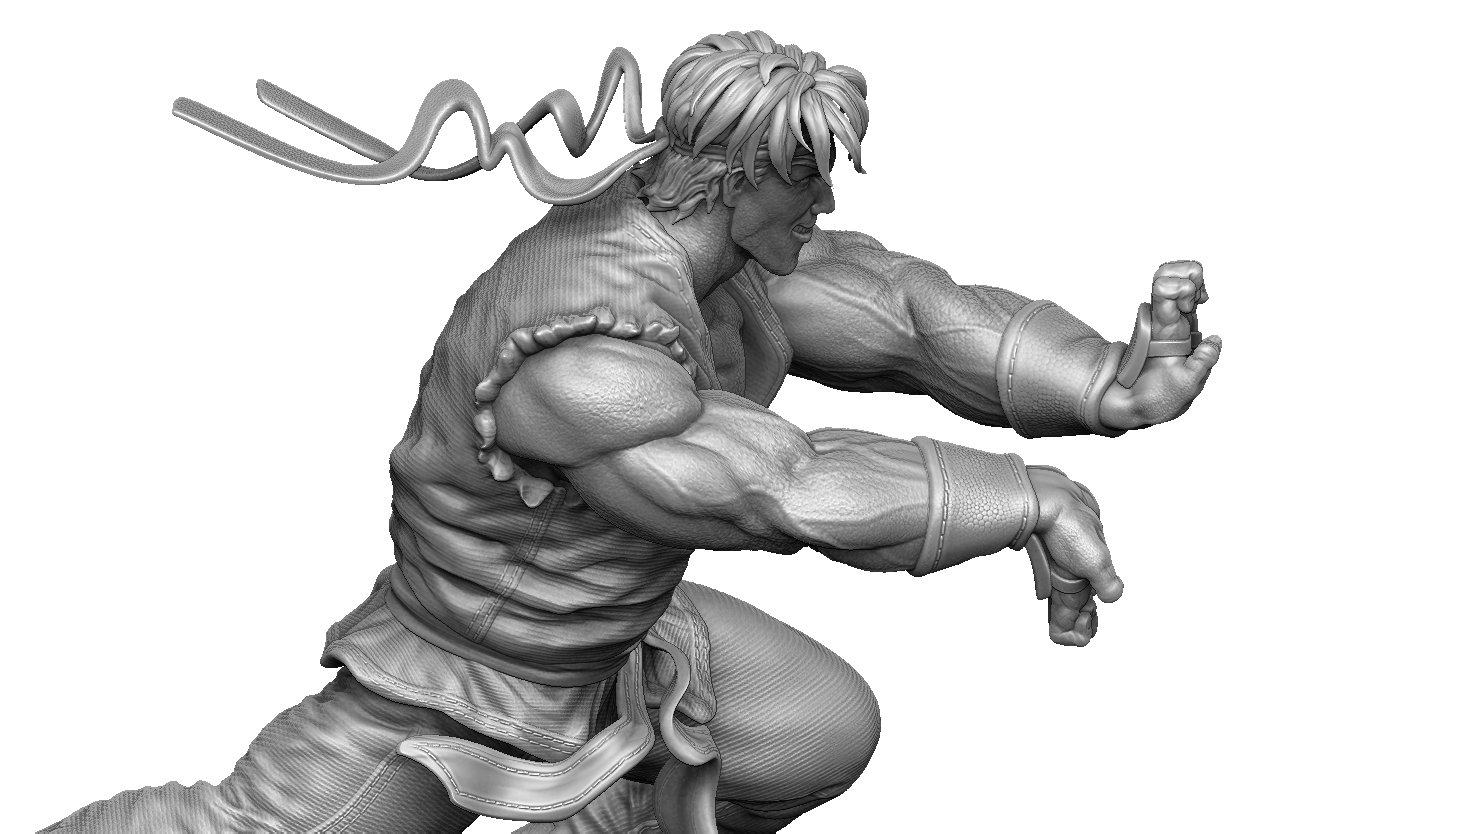 RYU STREET FIGHTER II FOR 3D PRINT STL 3D Model in Cartoon 3DExport